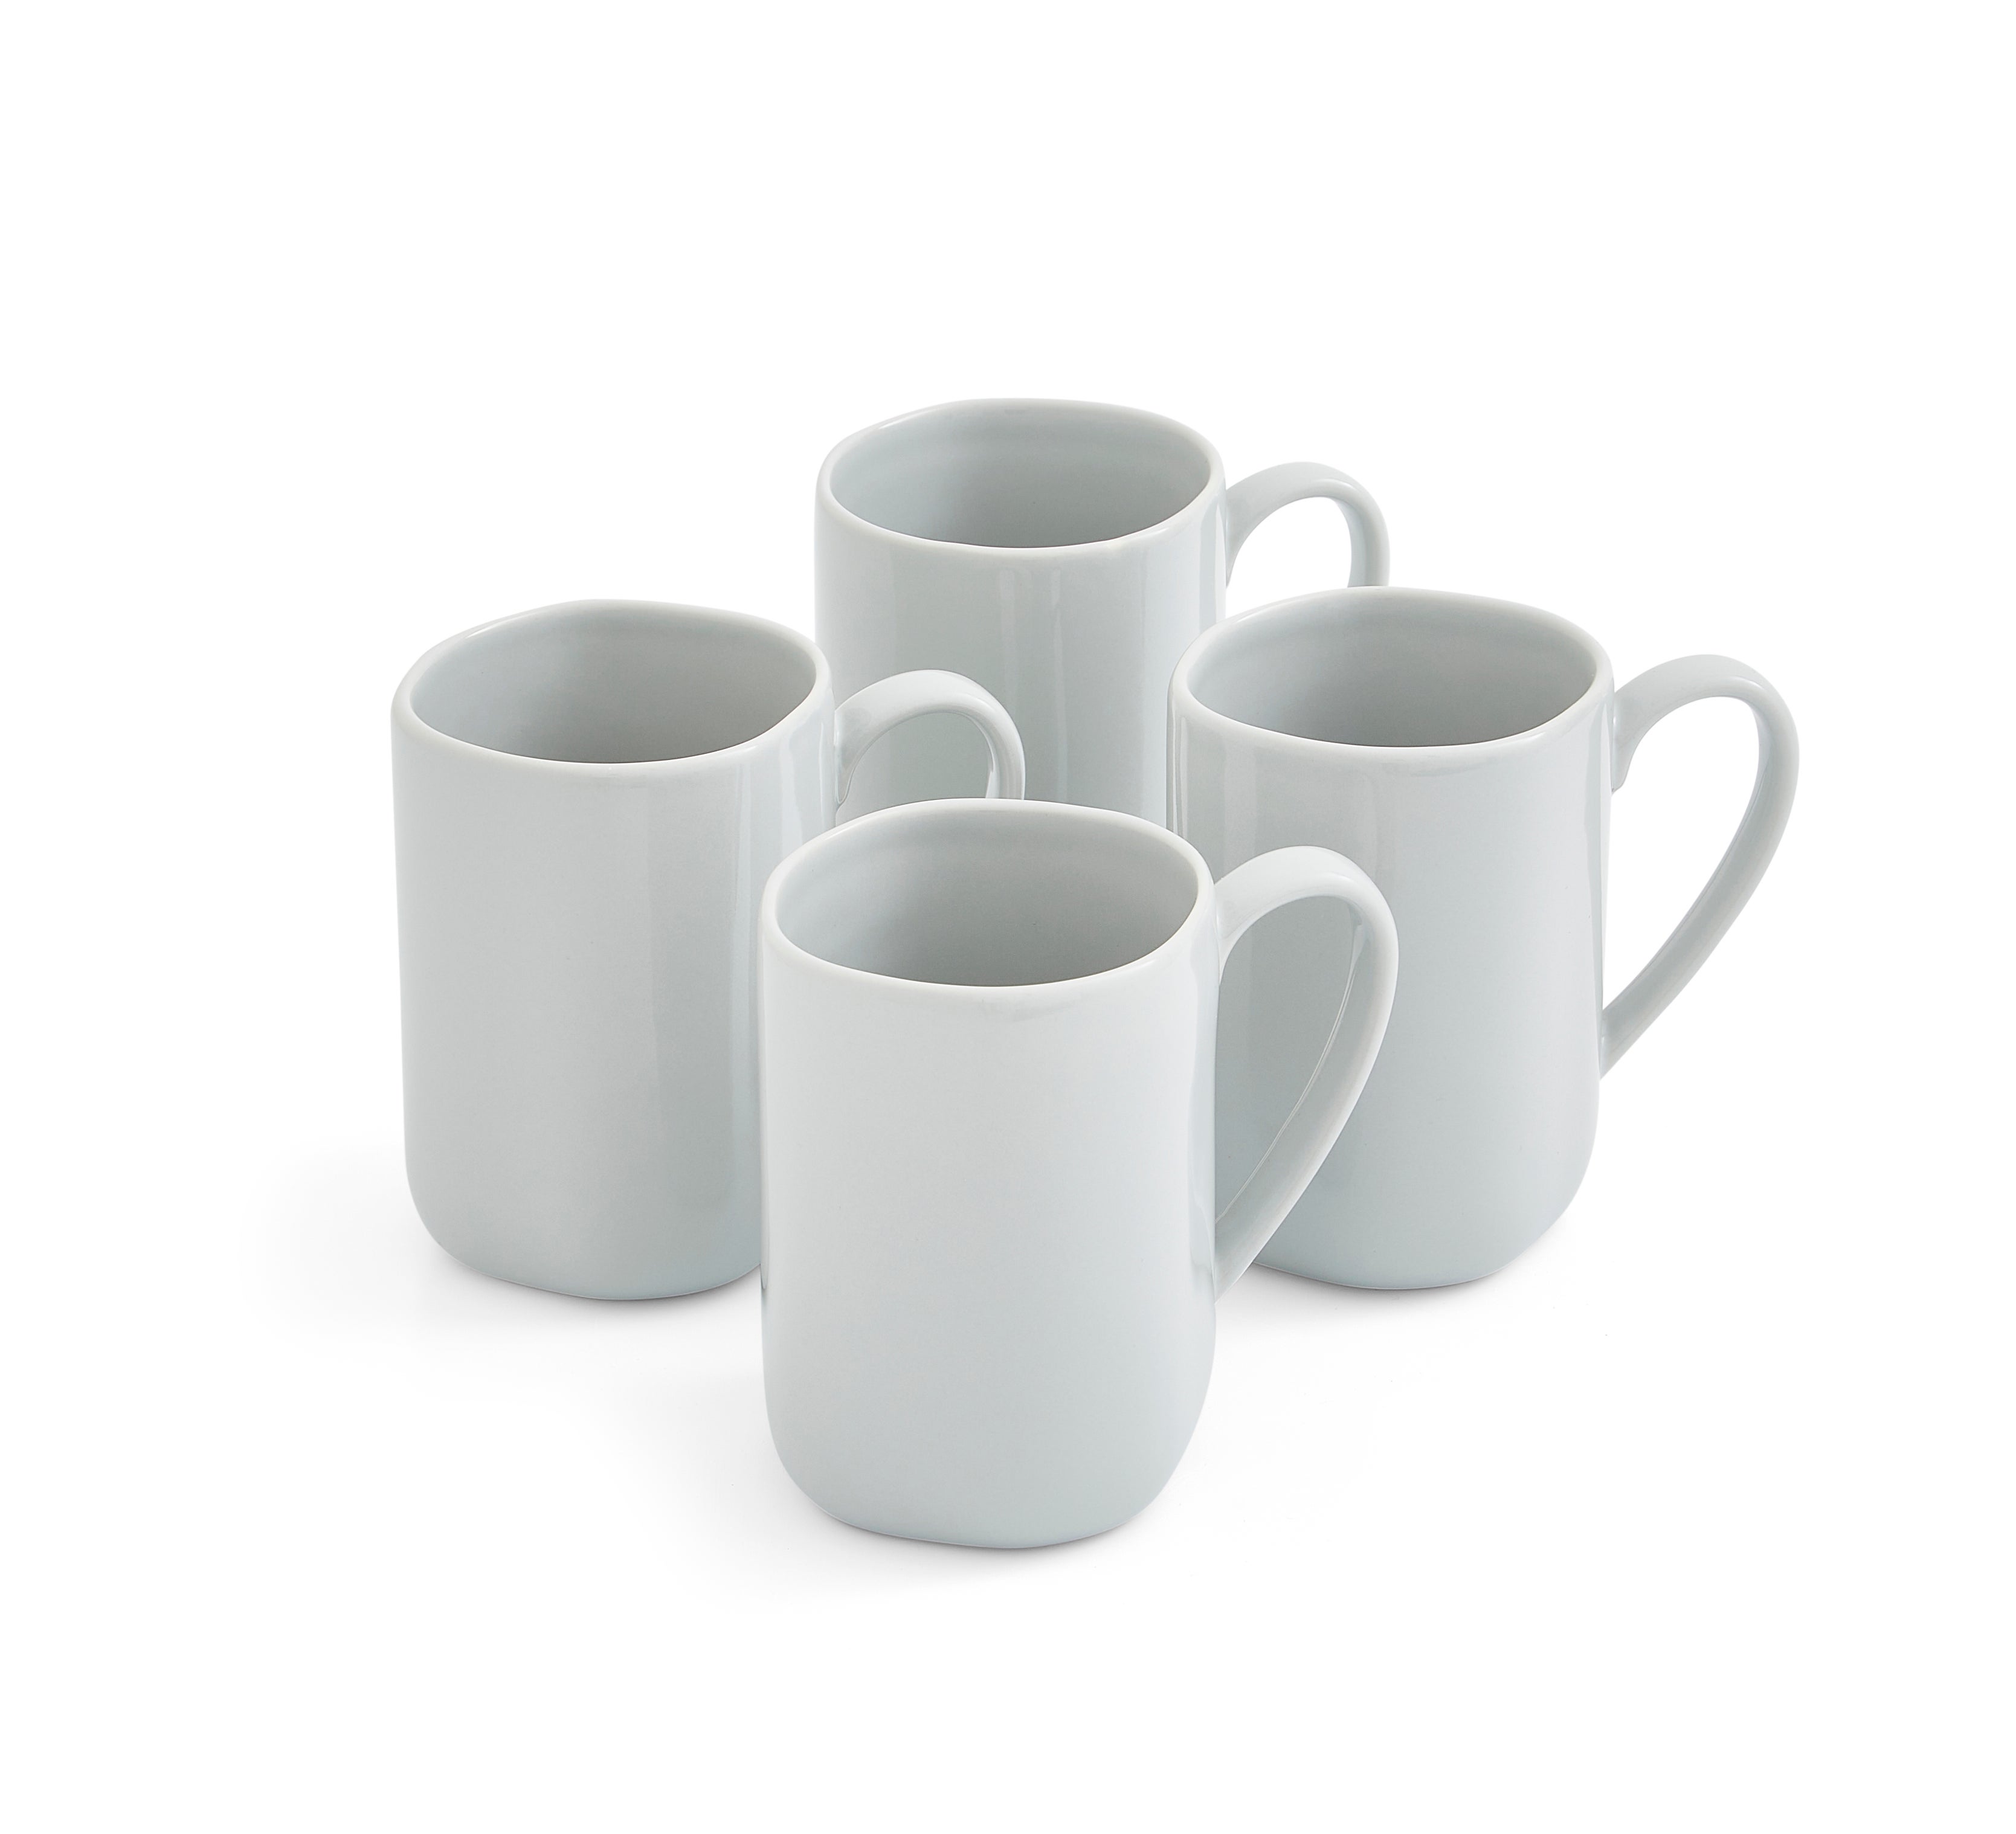 Photos - Glass Sophie Conran for Portmeirion Set of 4 Mugs Grey